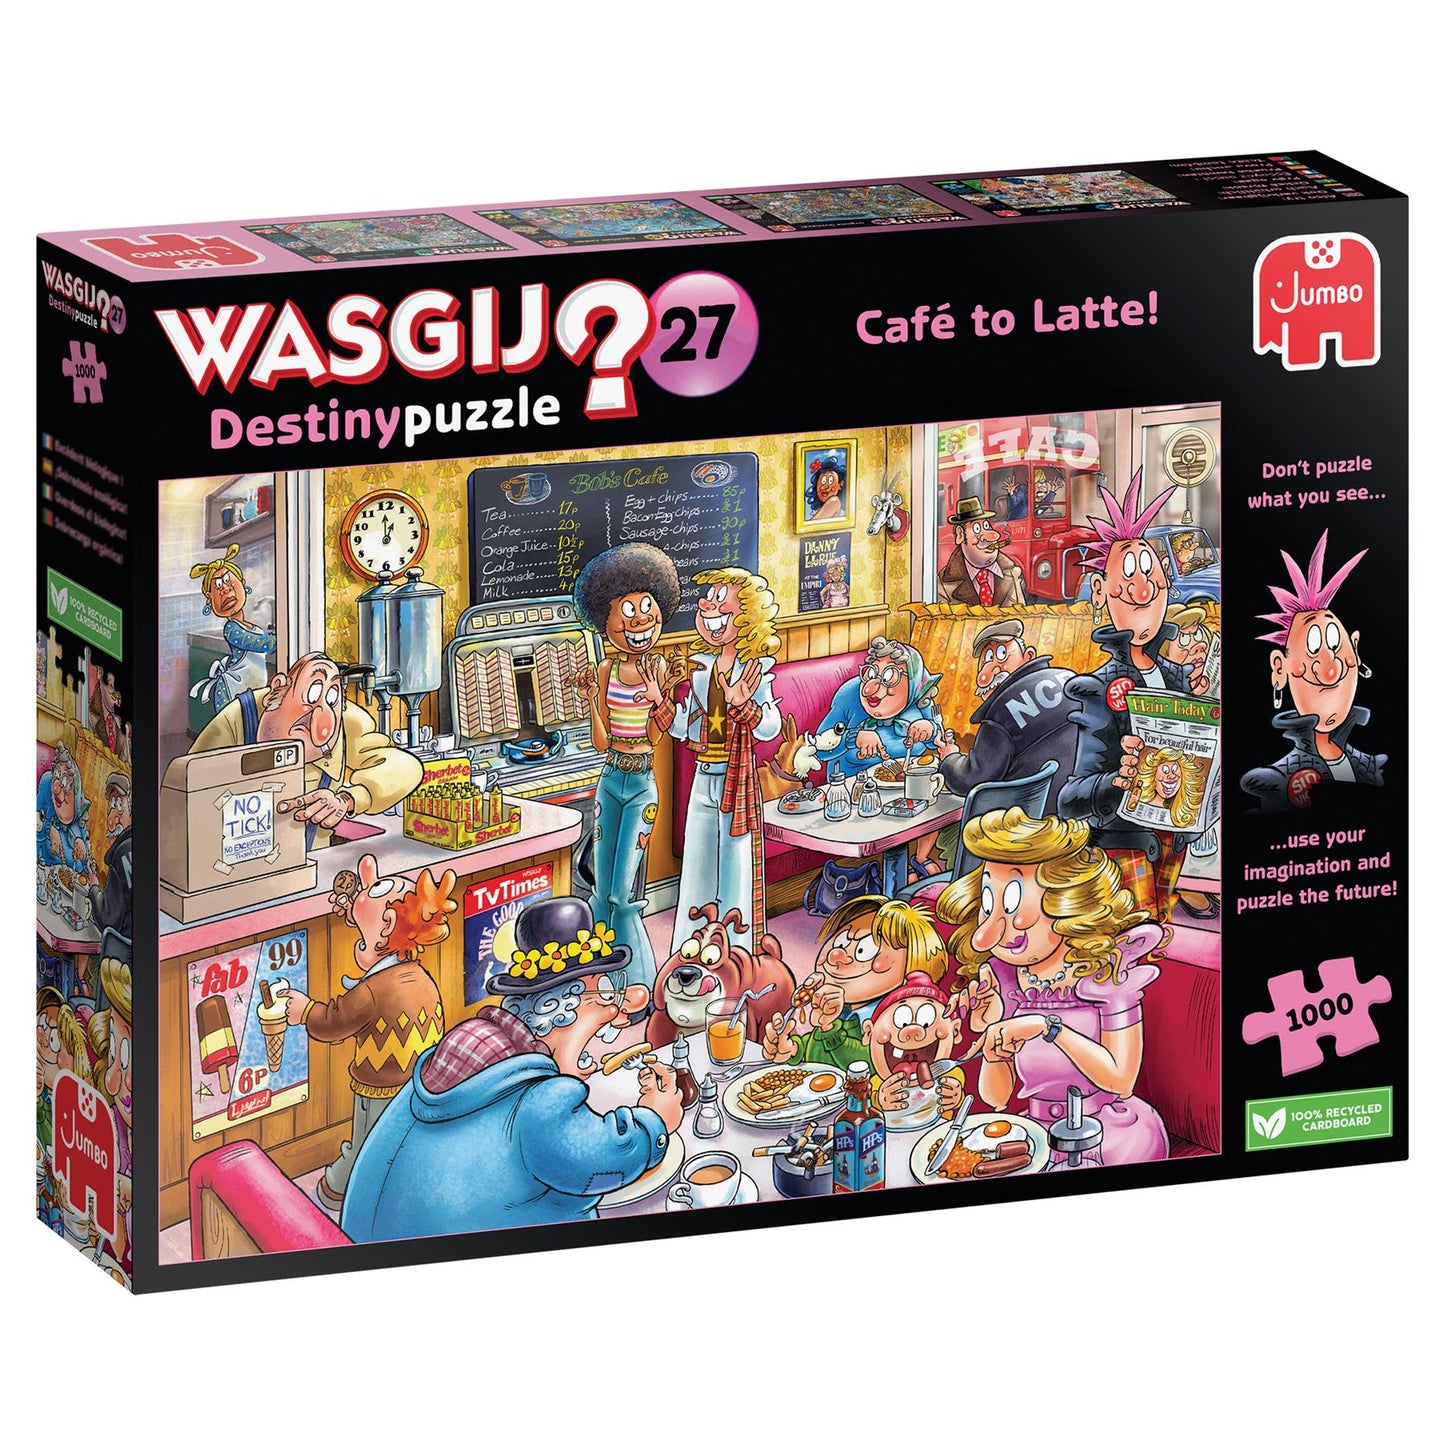 Wasgij Destiny 27 Cafe to Latte 1000 Piece Jigsaw Puzzle